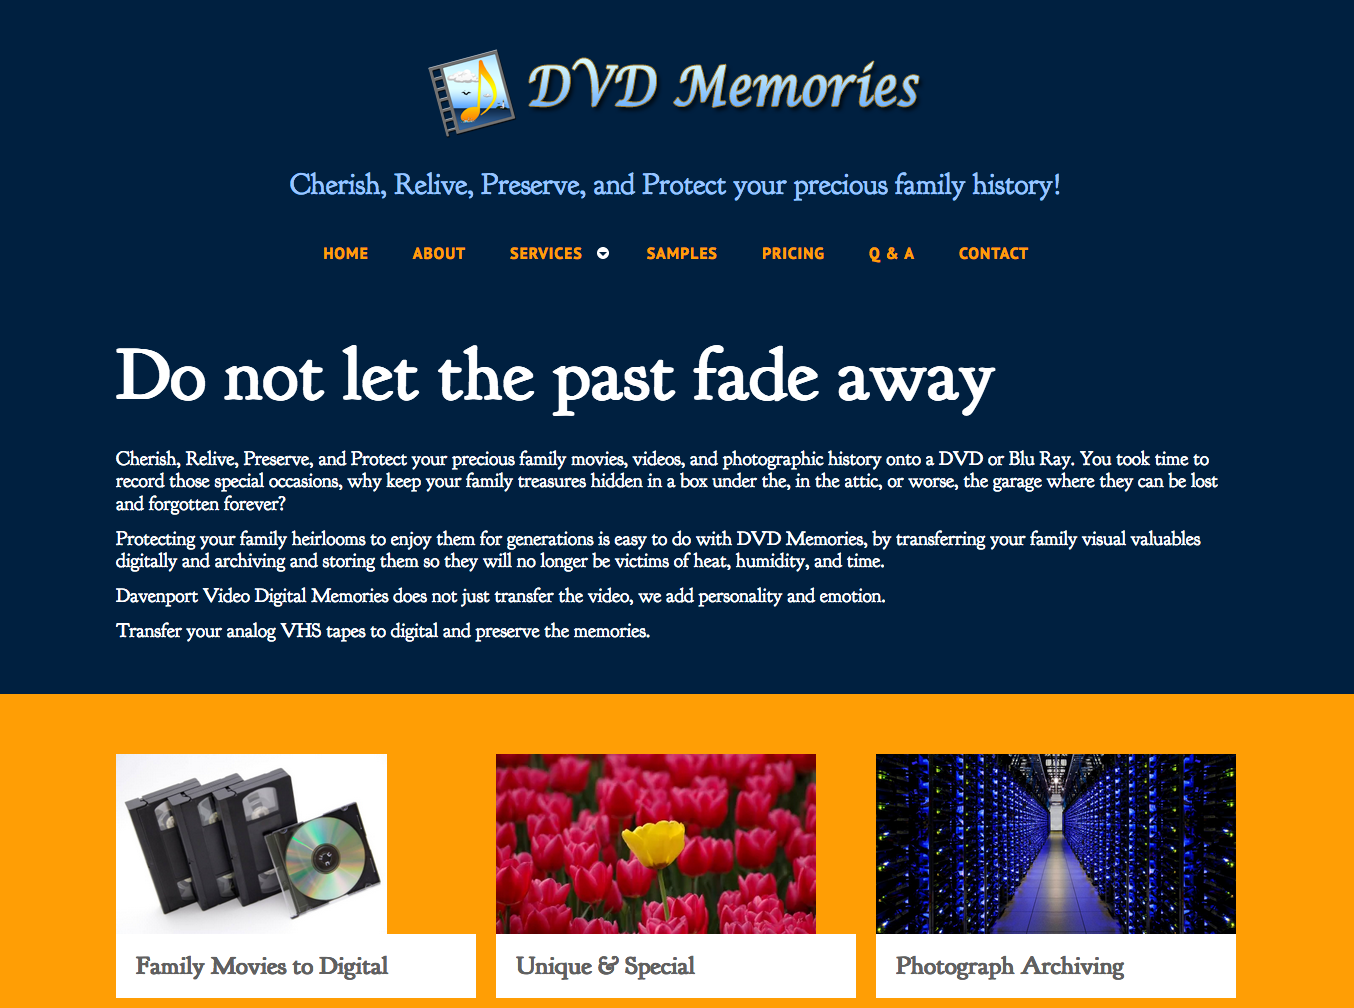 DVD Memories website.